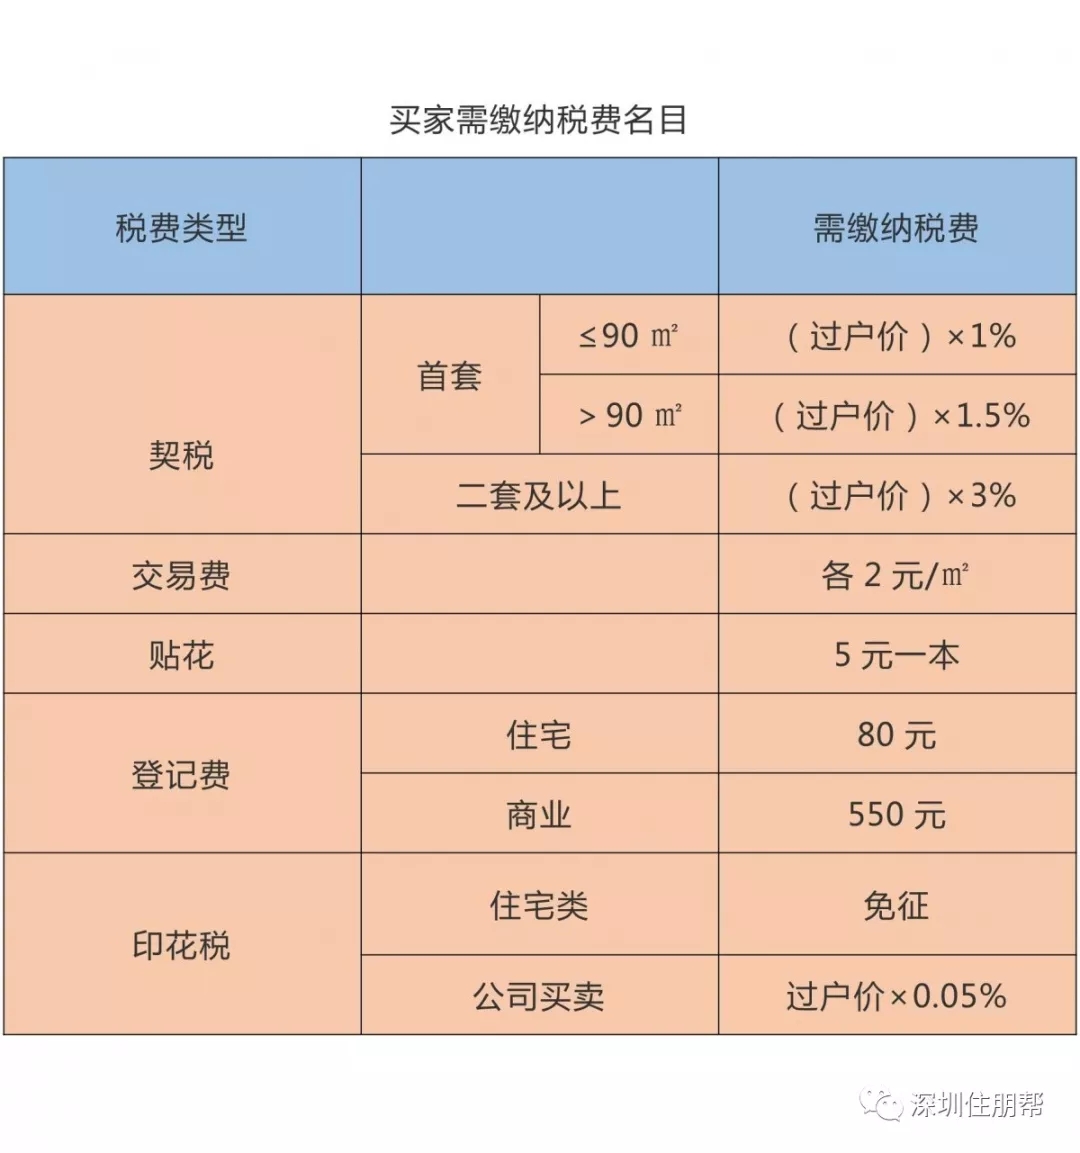 上海非普通住宅标准2016_2016非普通住宅新标准_2016非普通住宅标准